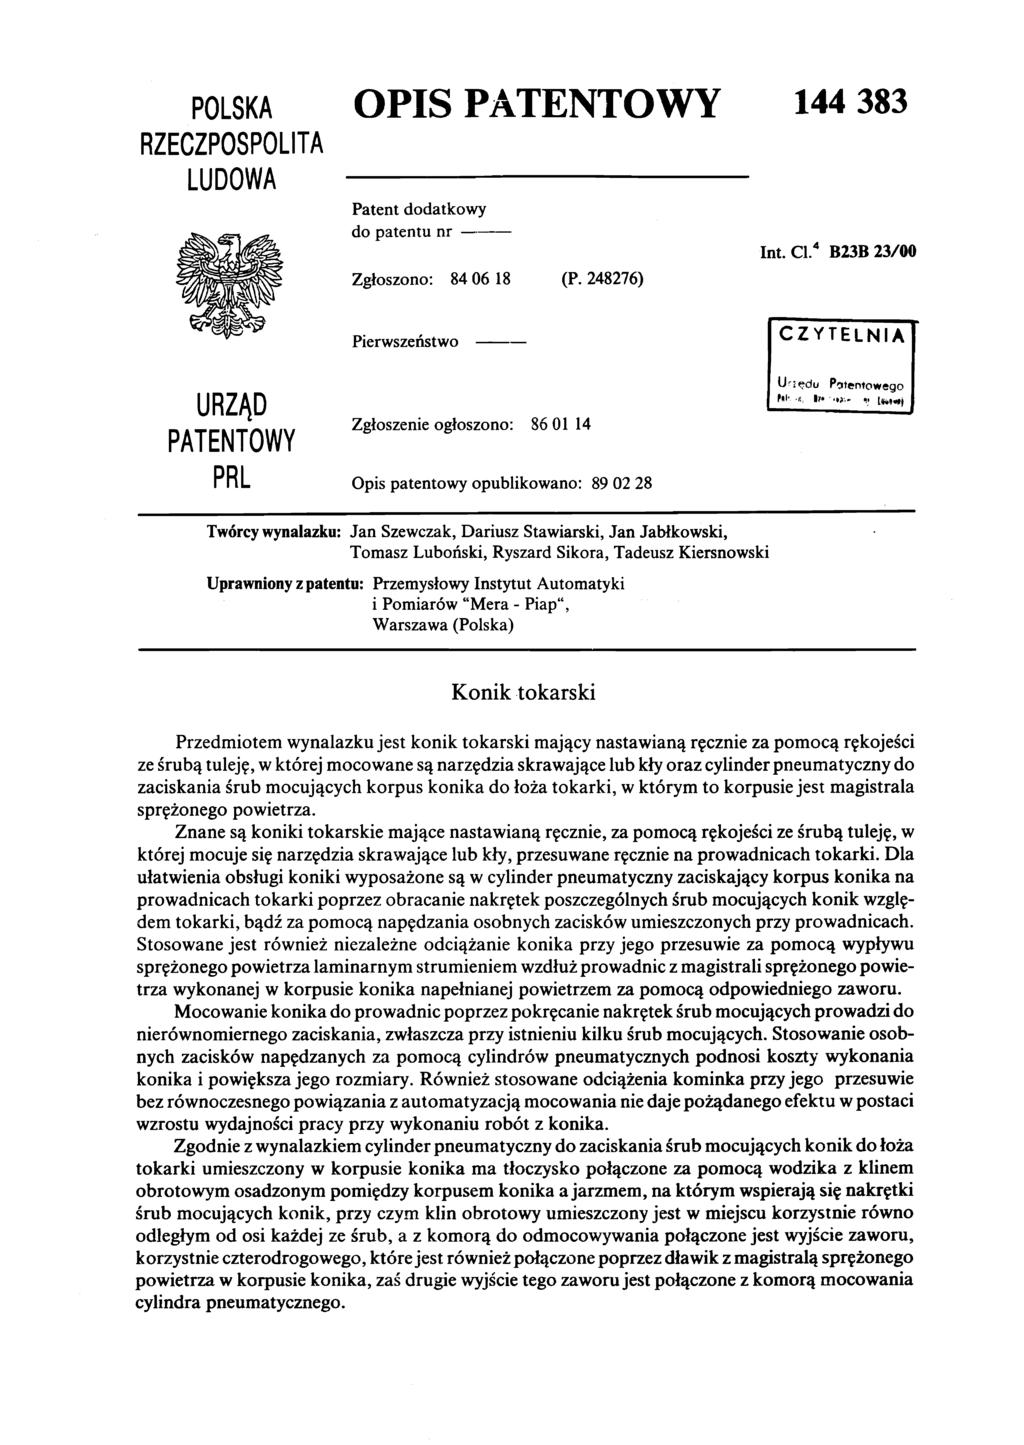 POLSKA RZECZPOSPOLITA LUDOWA OPIS PATENTOWY Patent dodatkowy do patentunr Zgłoszono: 84 06 18 (P. 248276) 144 383 Int. Cl.